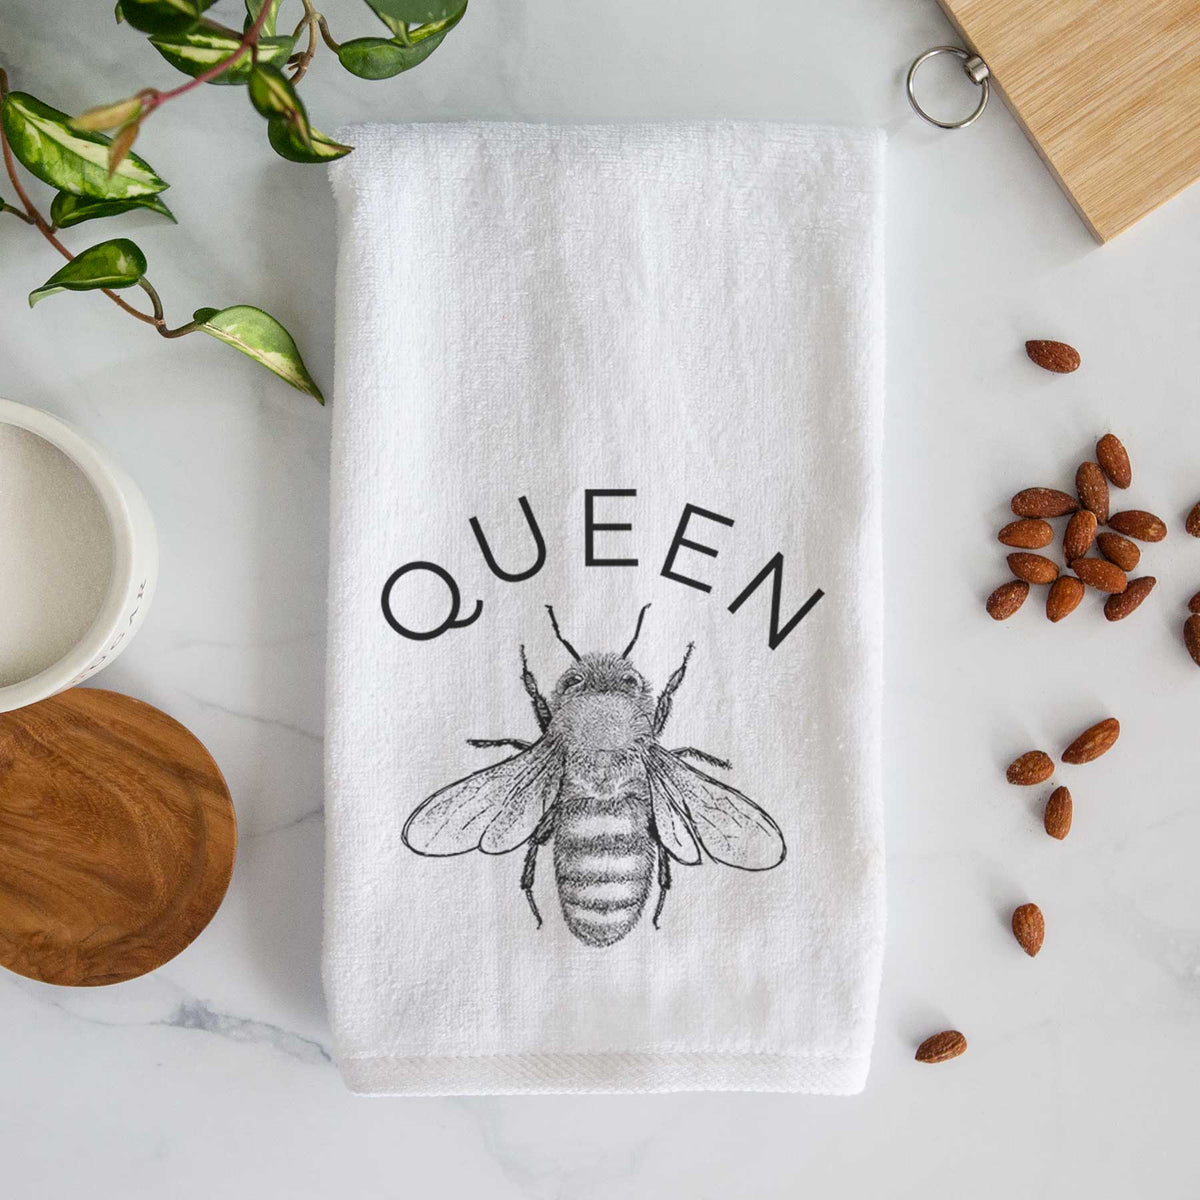 Queen Bee Hand Towel